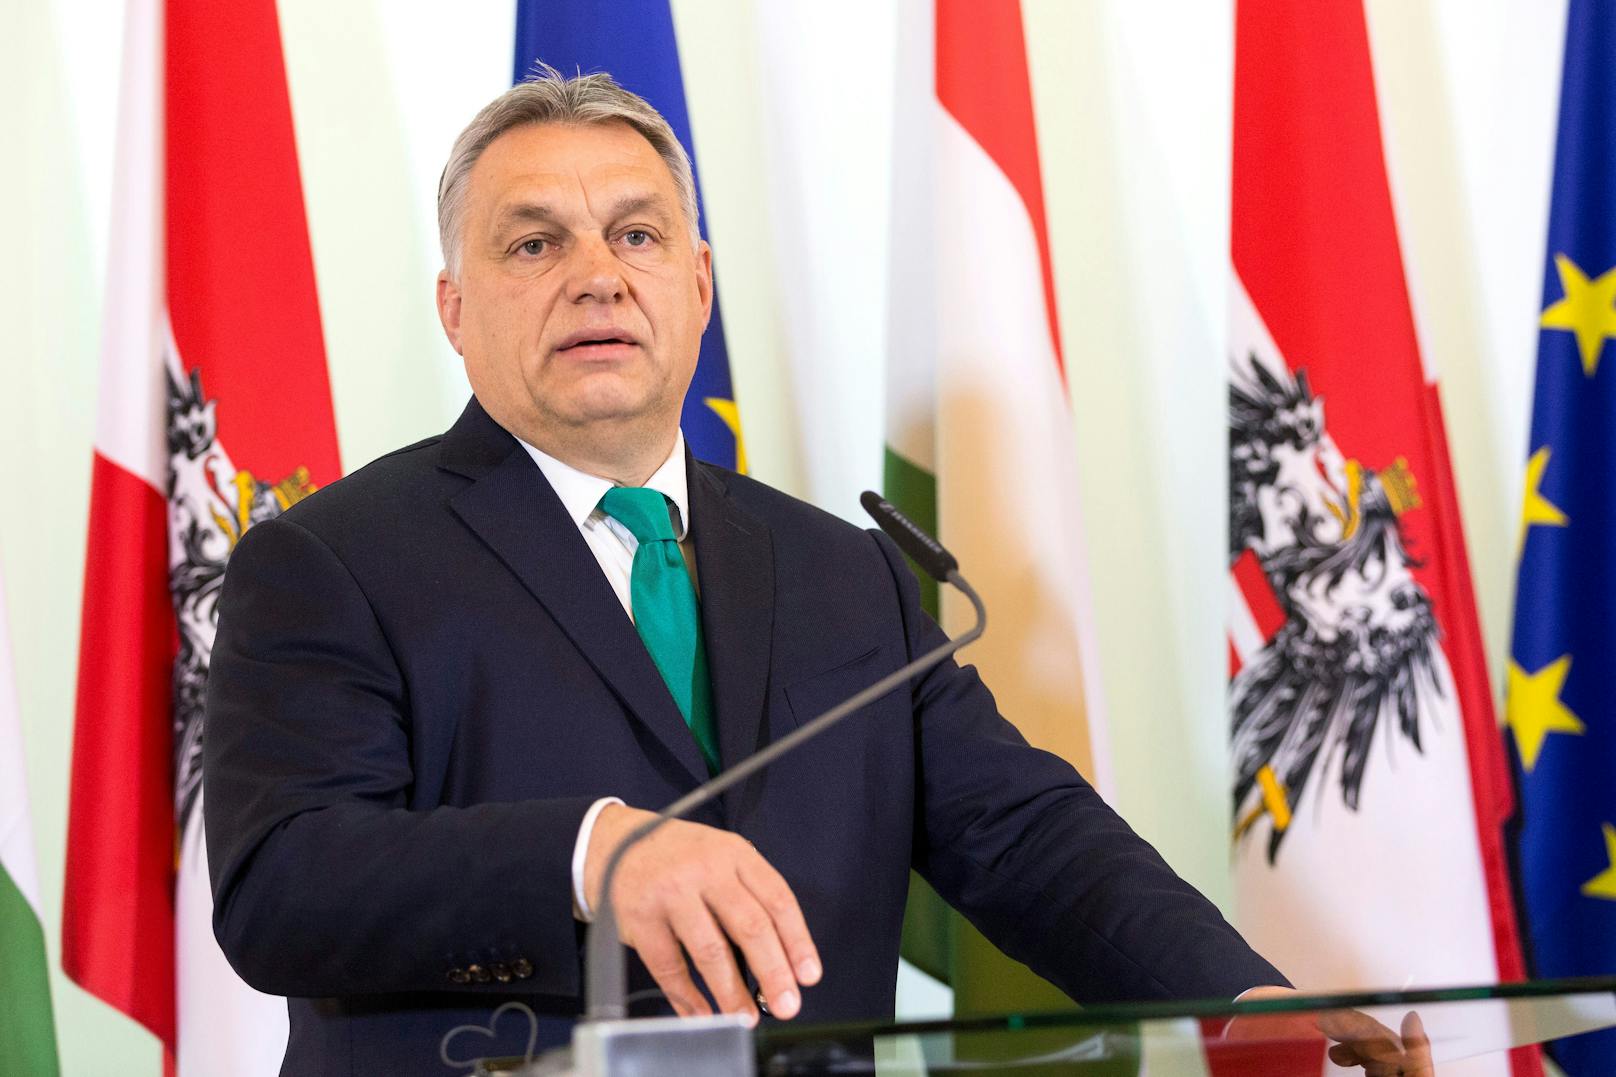 Orban heute in Wien – Brisanter Besuch nach Nazi-Sager